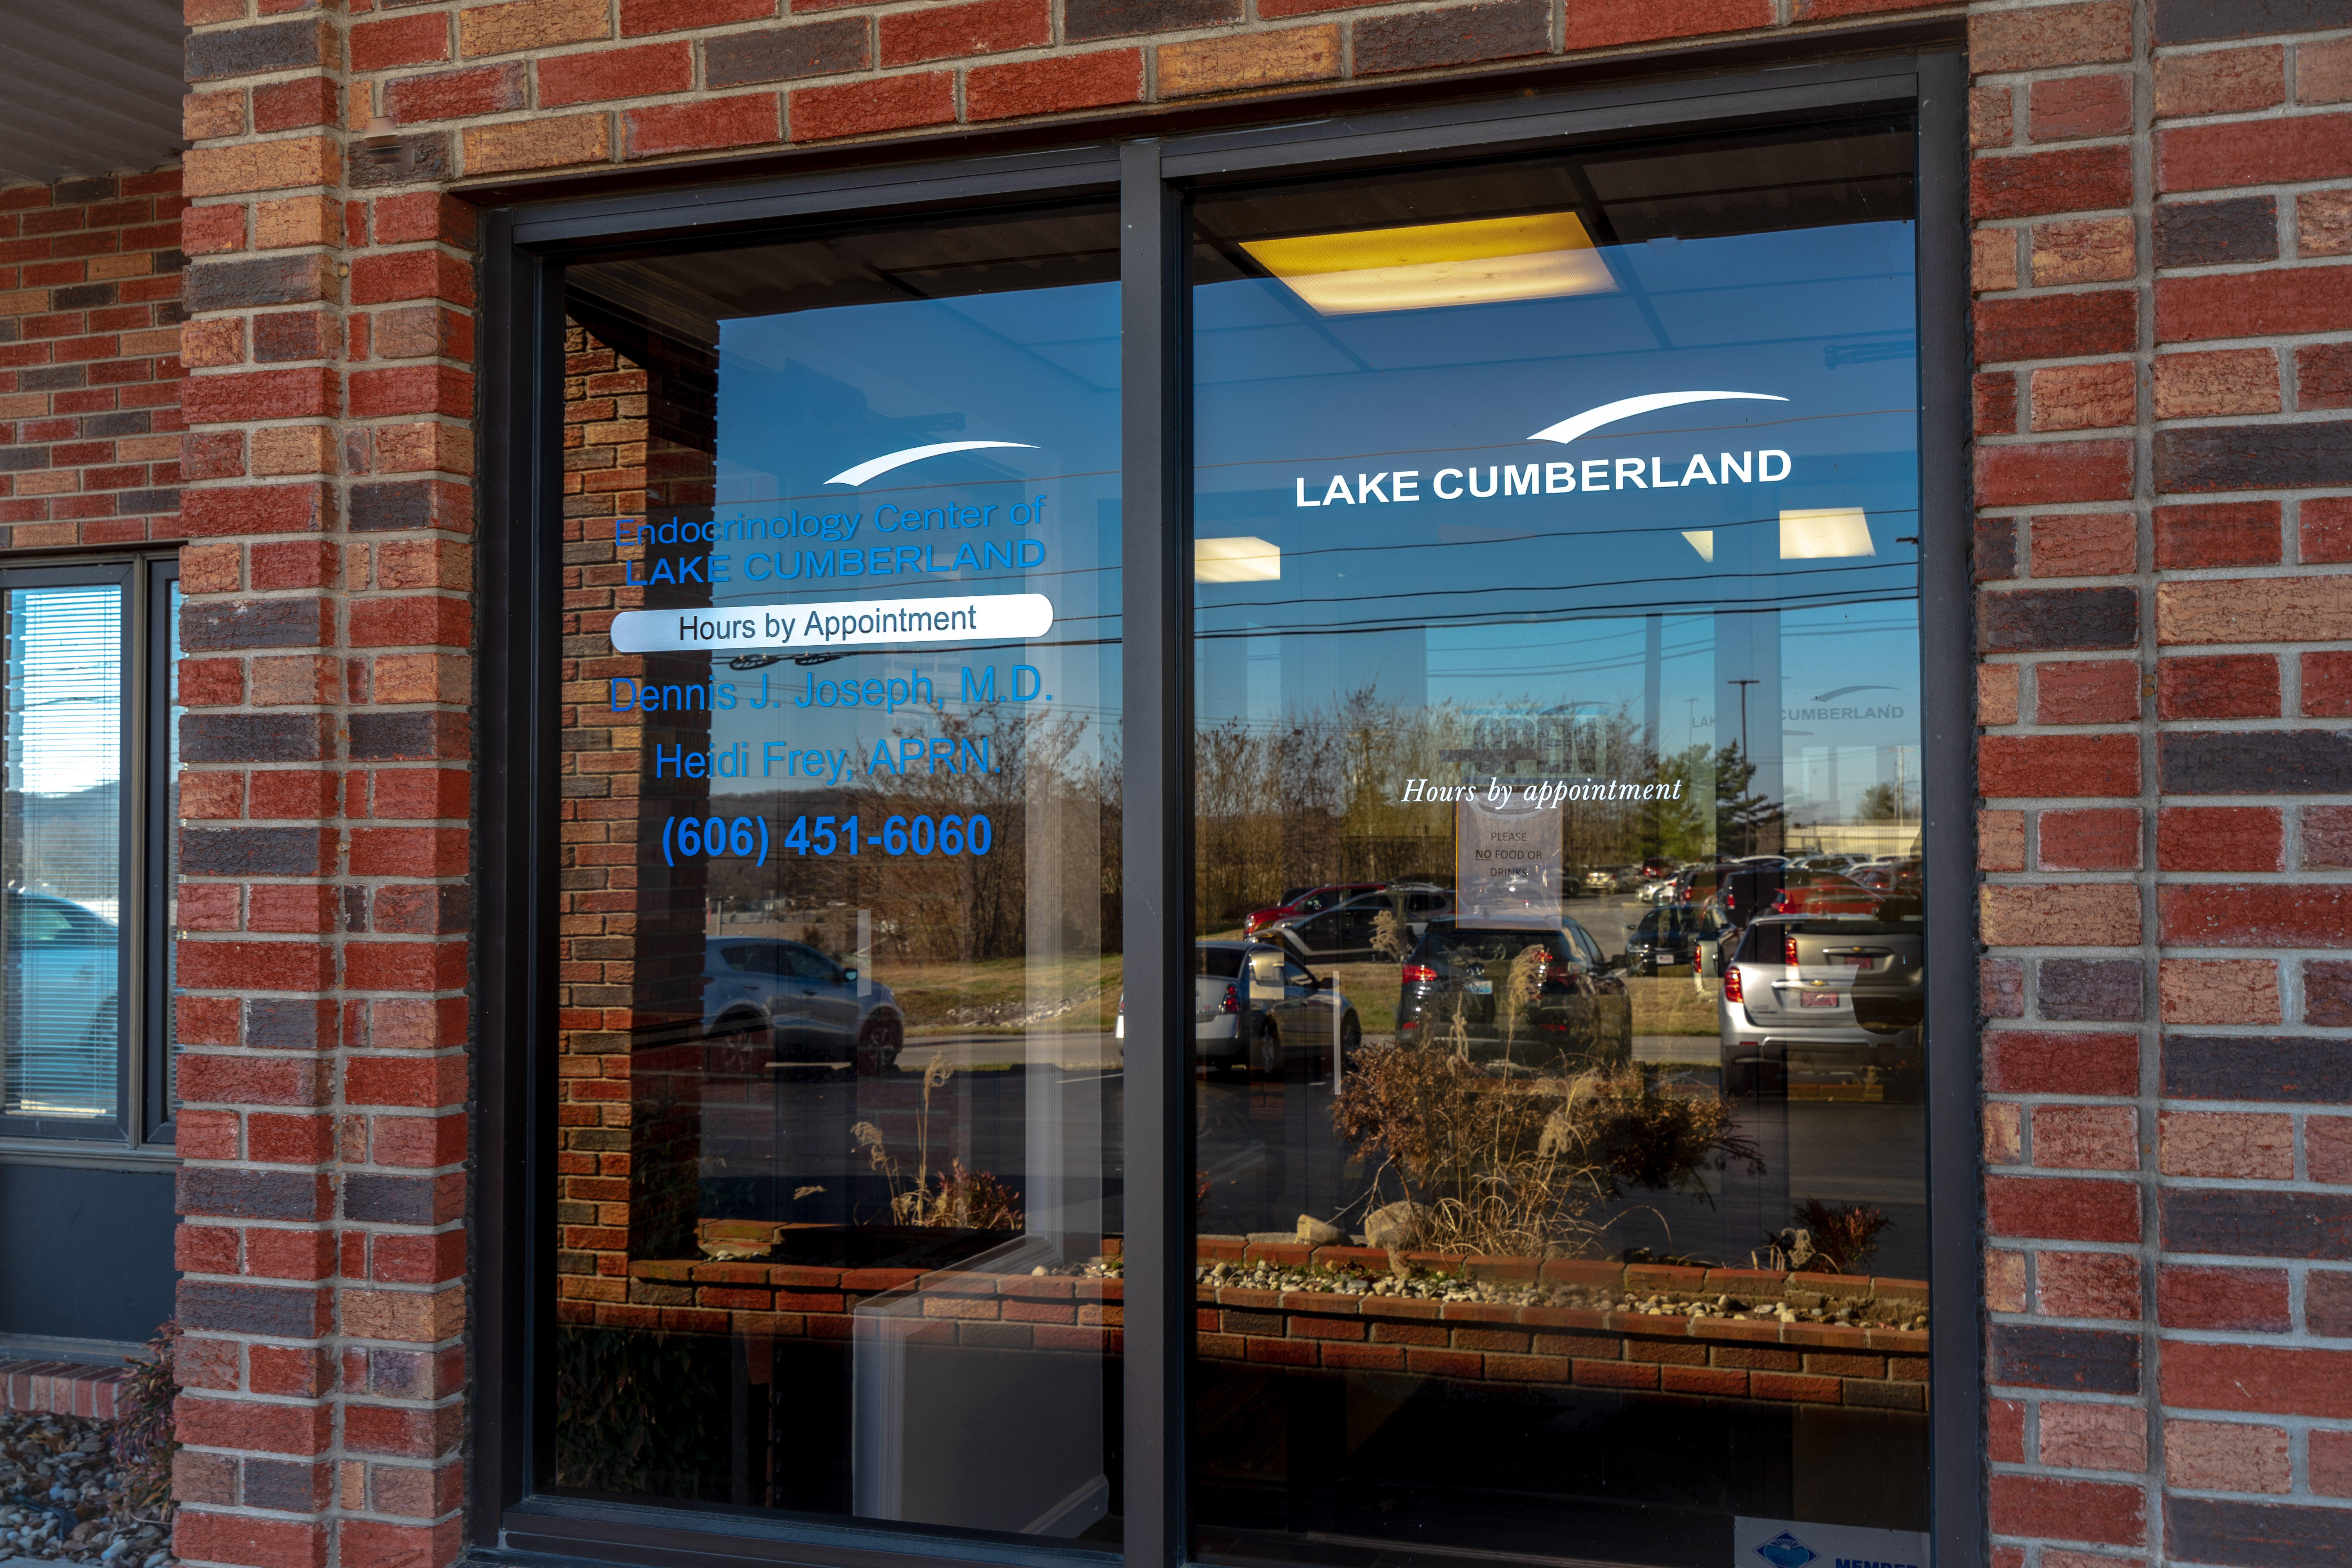 Endocrinology Center of Lake Cumberland Photo